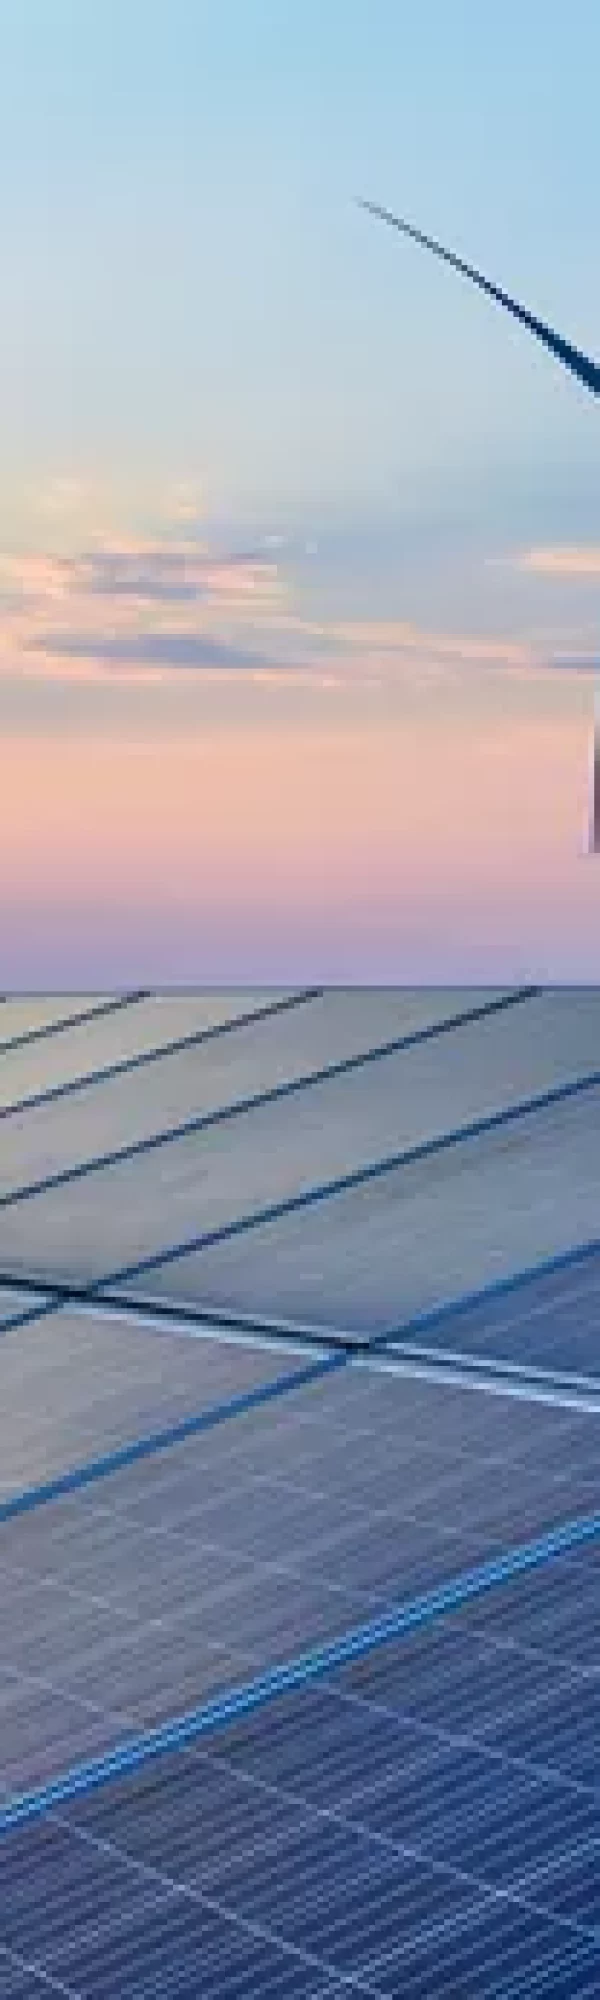 Plusieurs panneaux solaire photovoltaïque, entourés d'éoliennes avec un couché du soleil et un ciel rose et bleu.